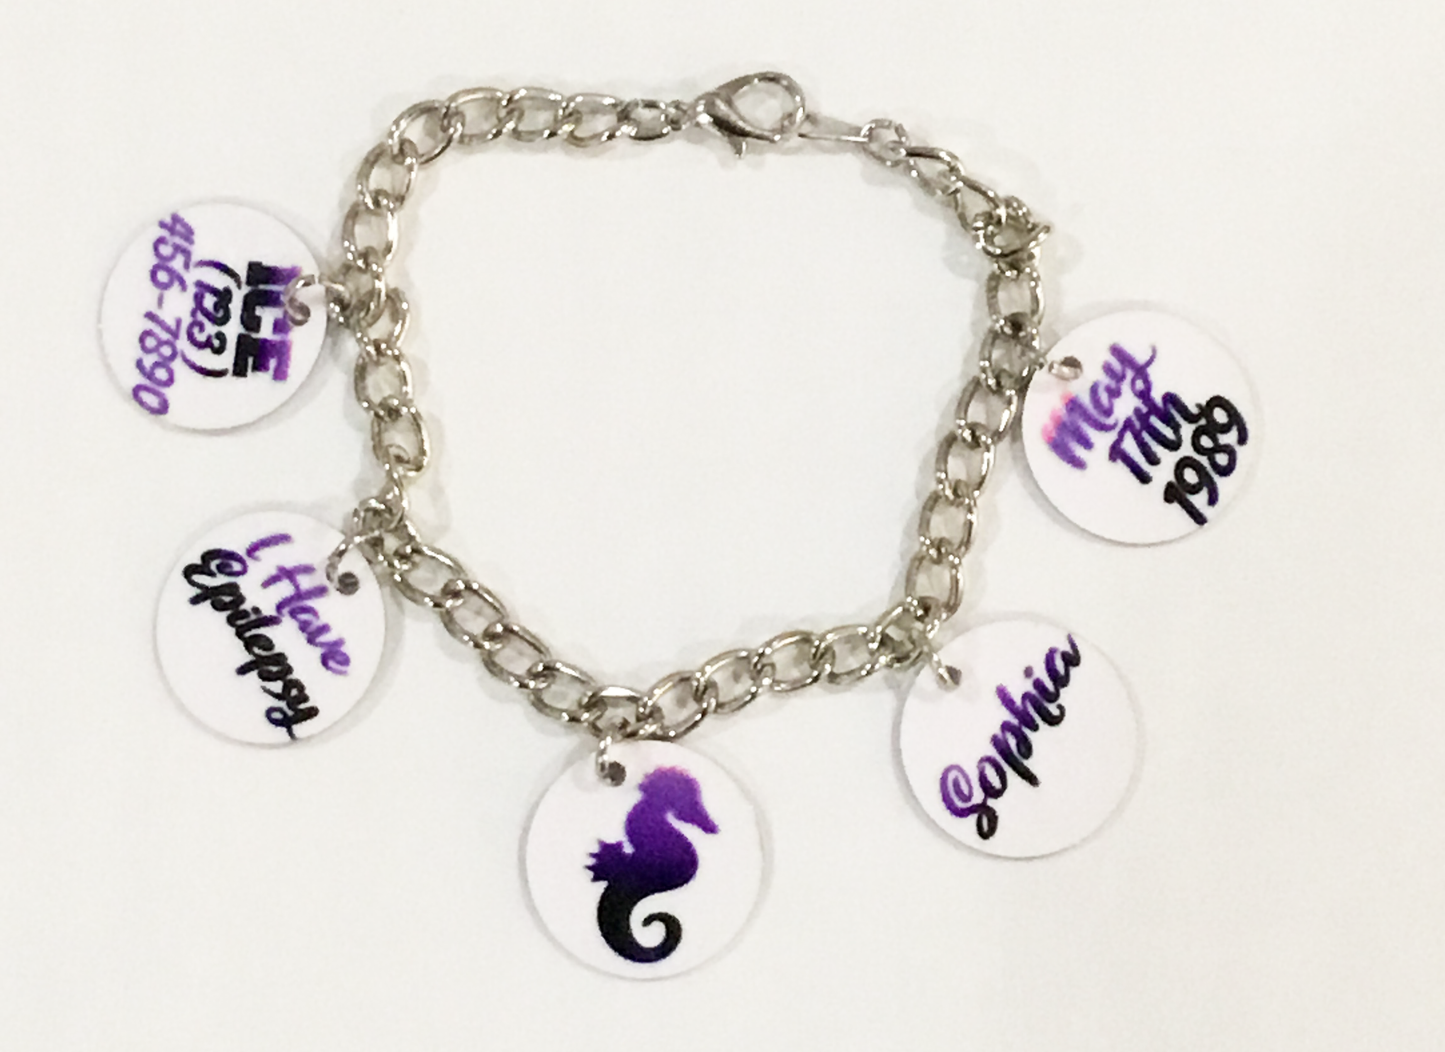 Epilepsy Awareness Charm Bracelet